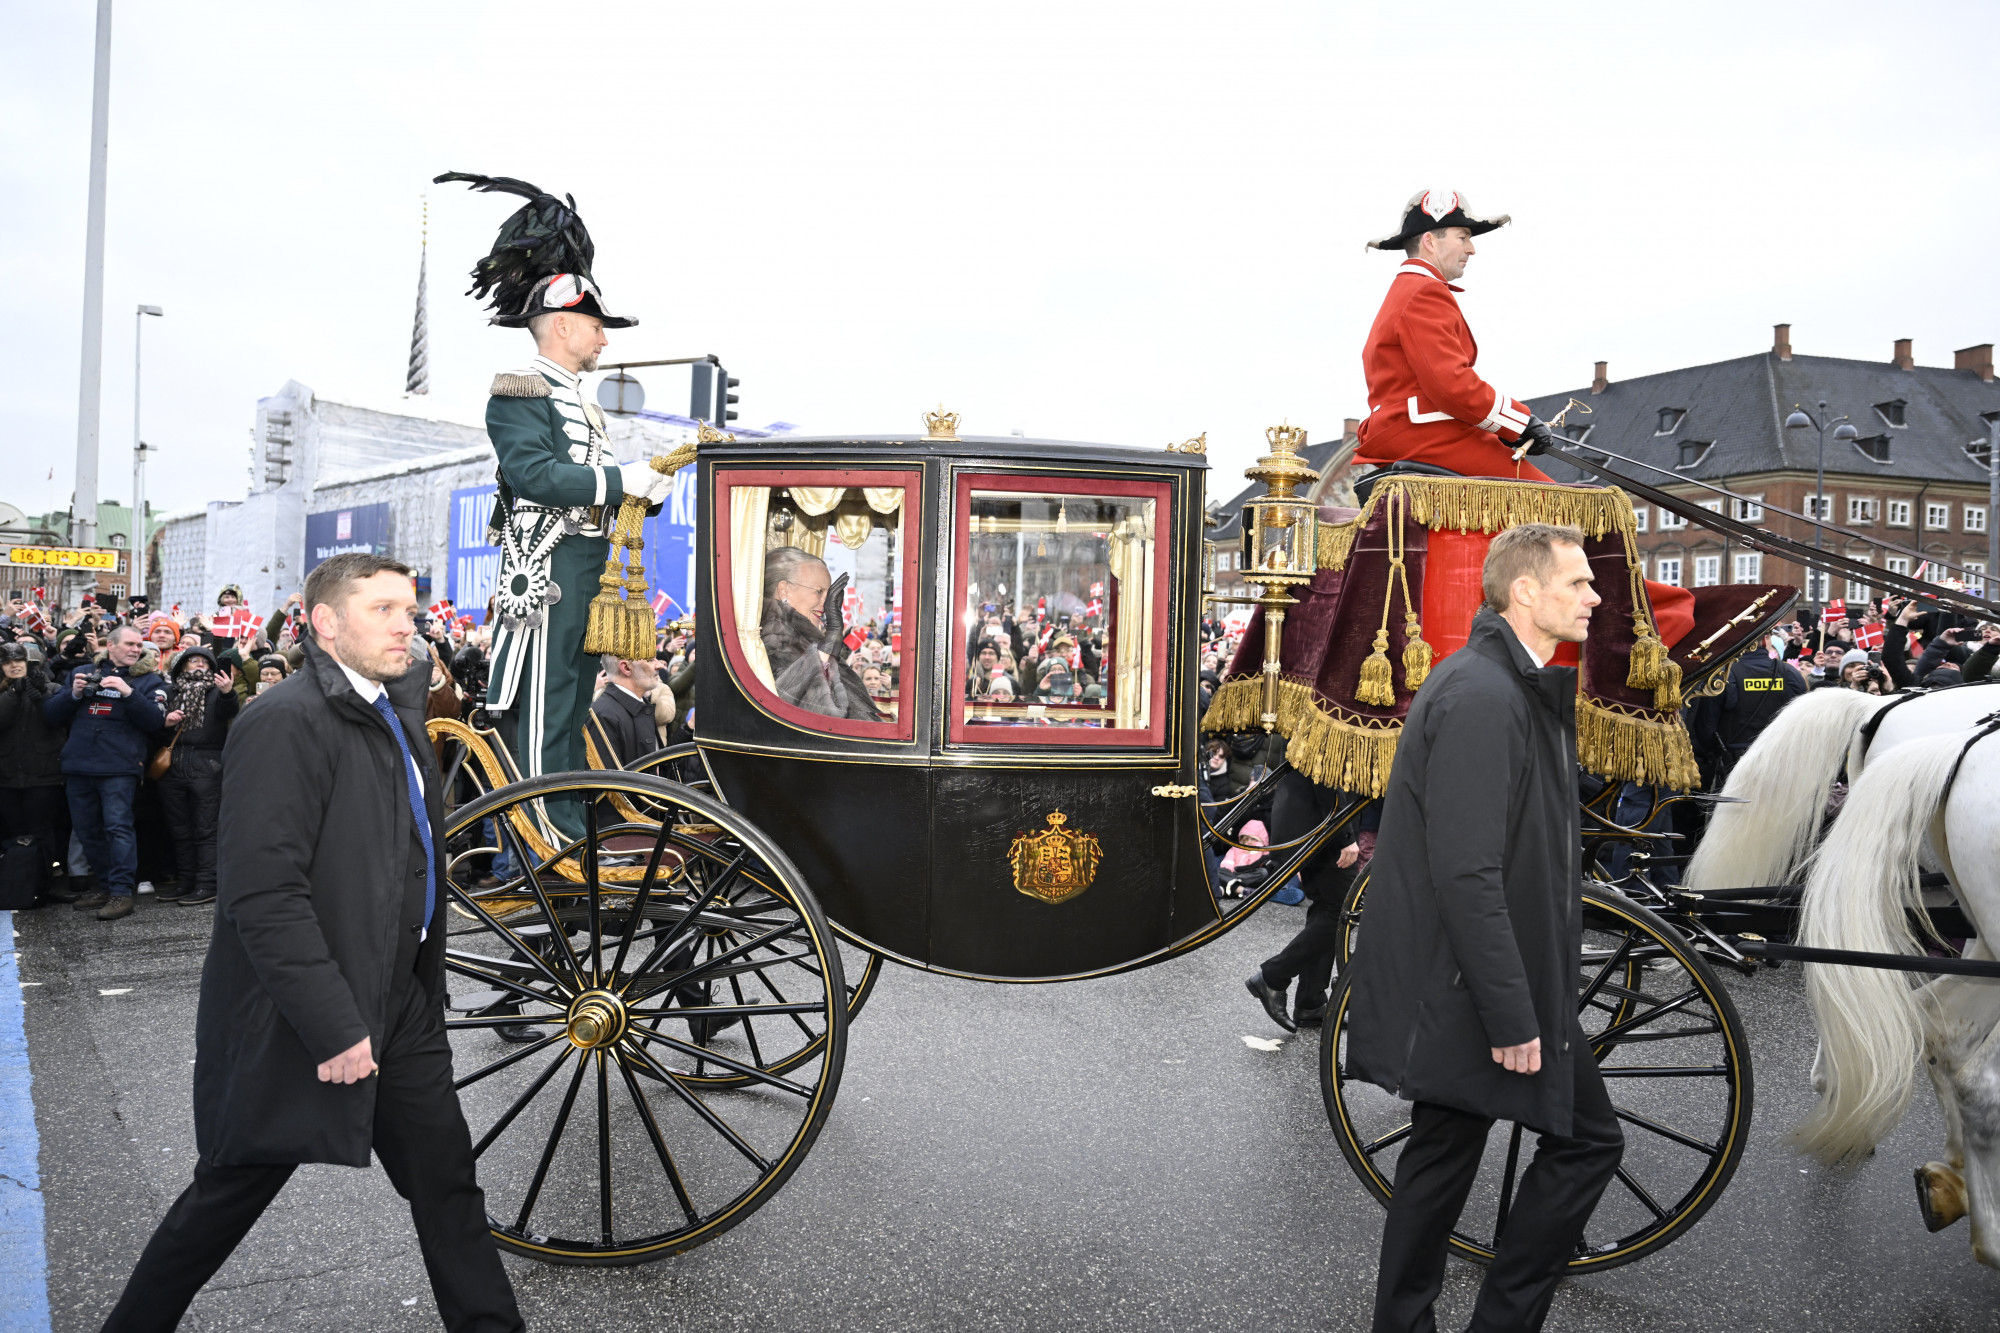 Koppenhágában megkondultak a harangok, 52 év után lemondott II. Margit királynő